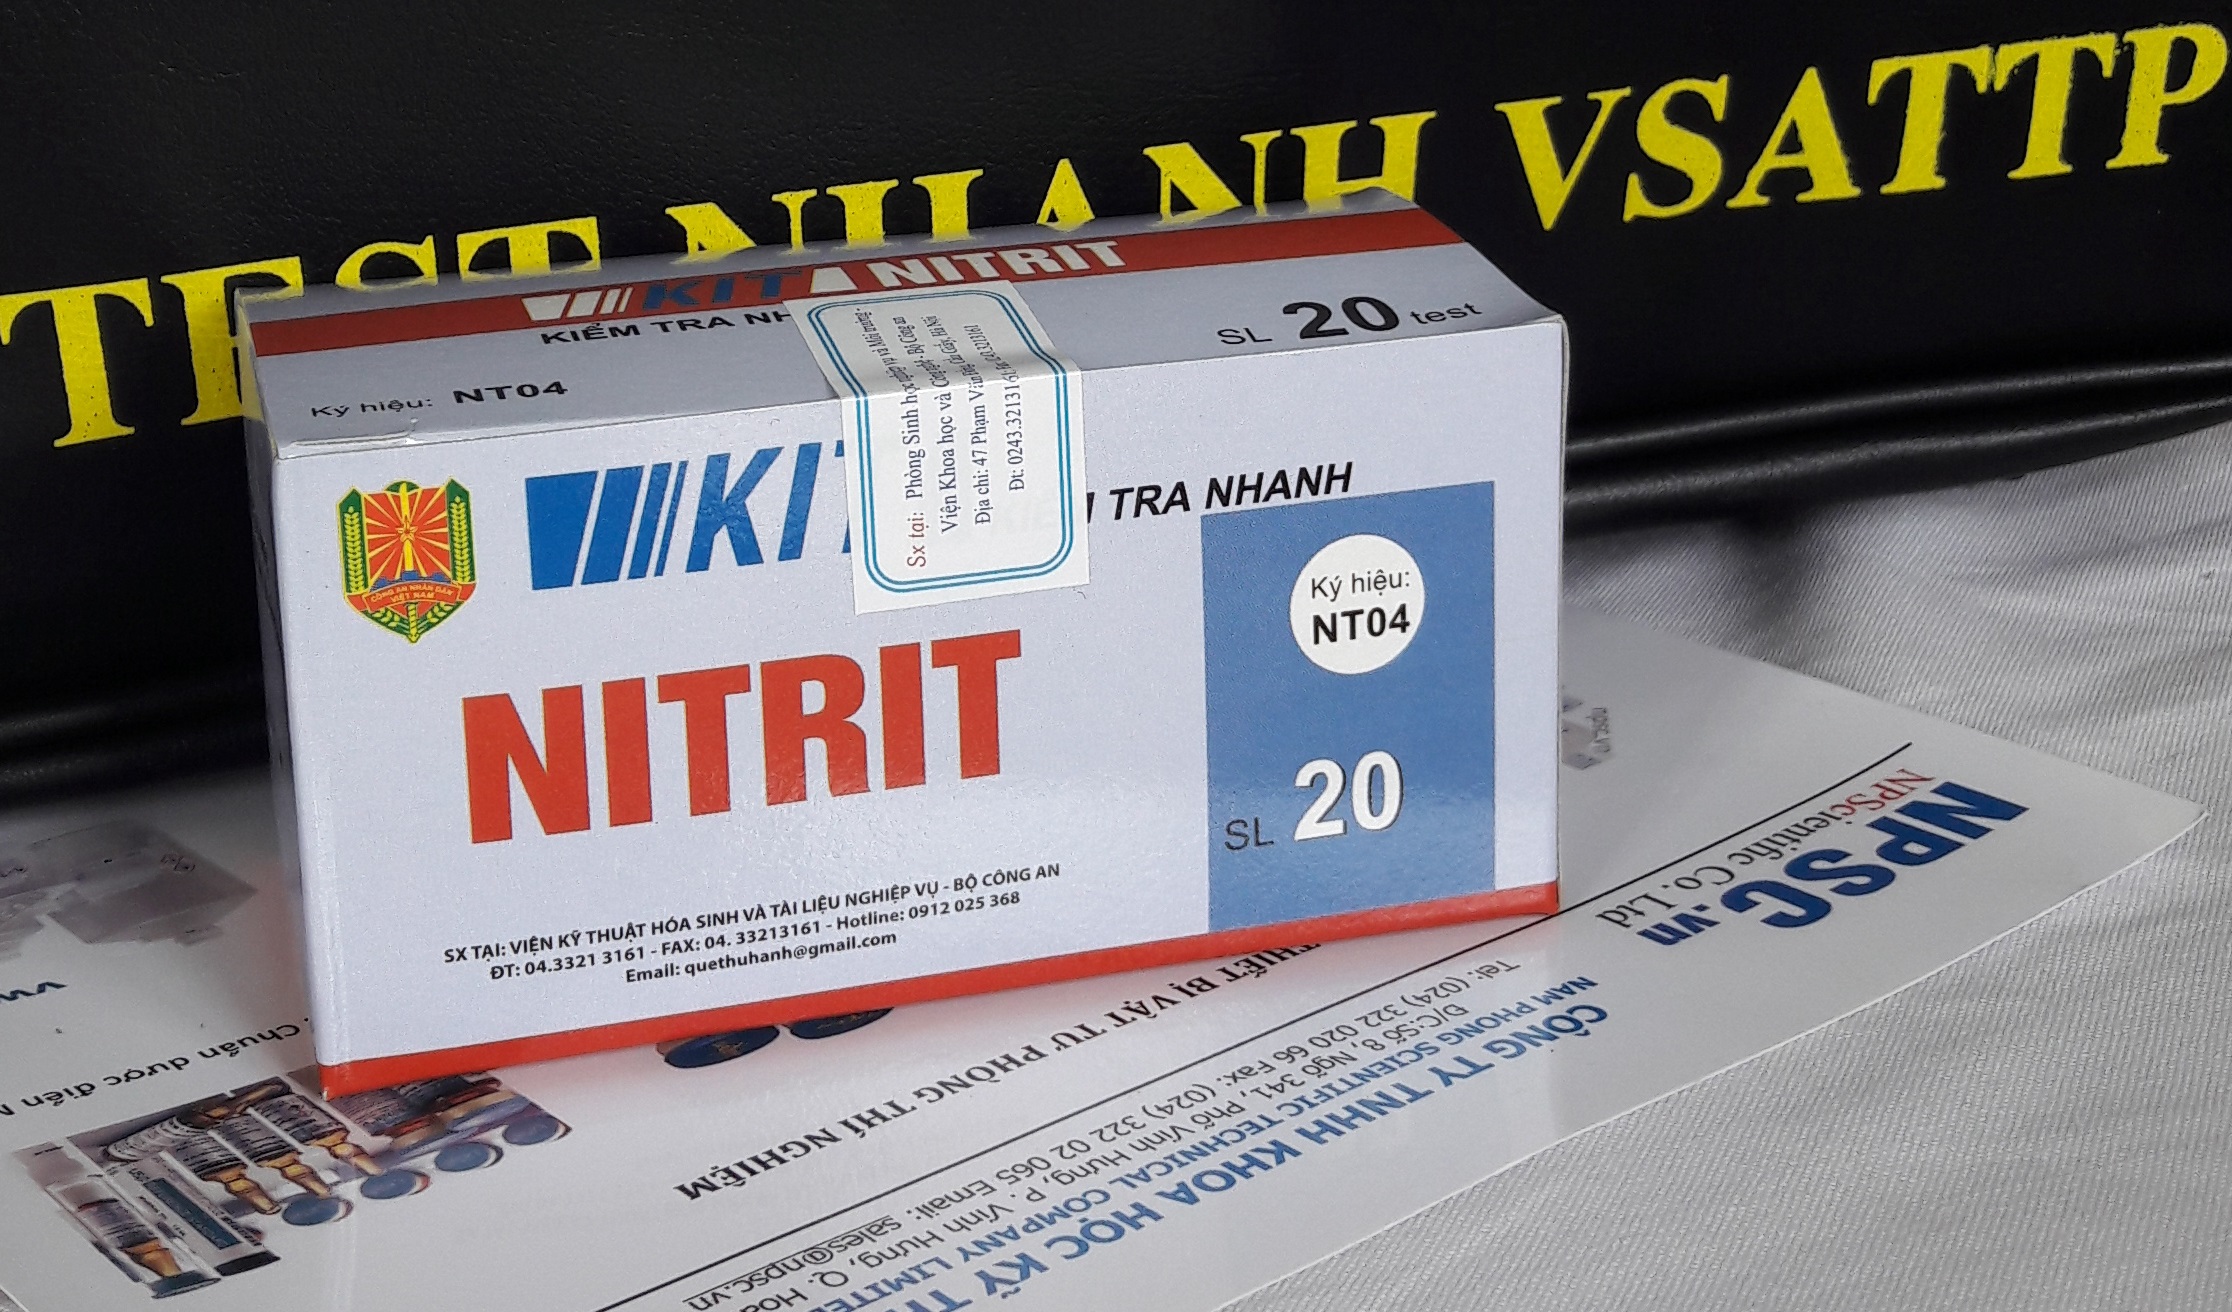 Test Kit kiểm tra nhanh Nitrit NT04 dễ sử dụng và cực kỳ an toàn